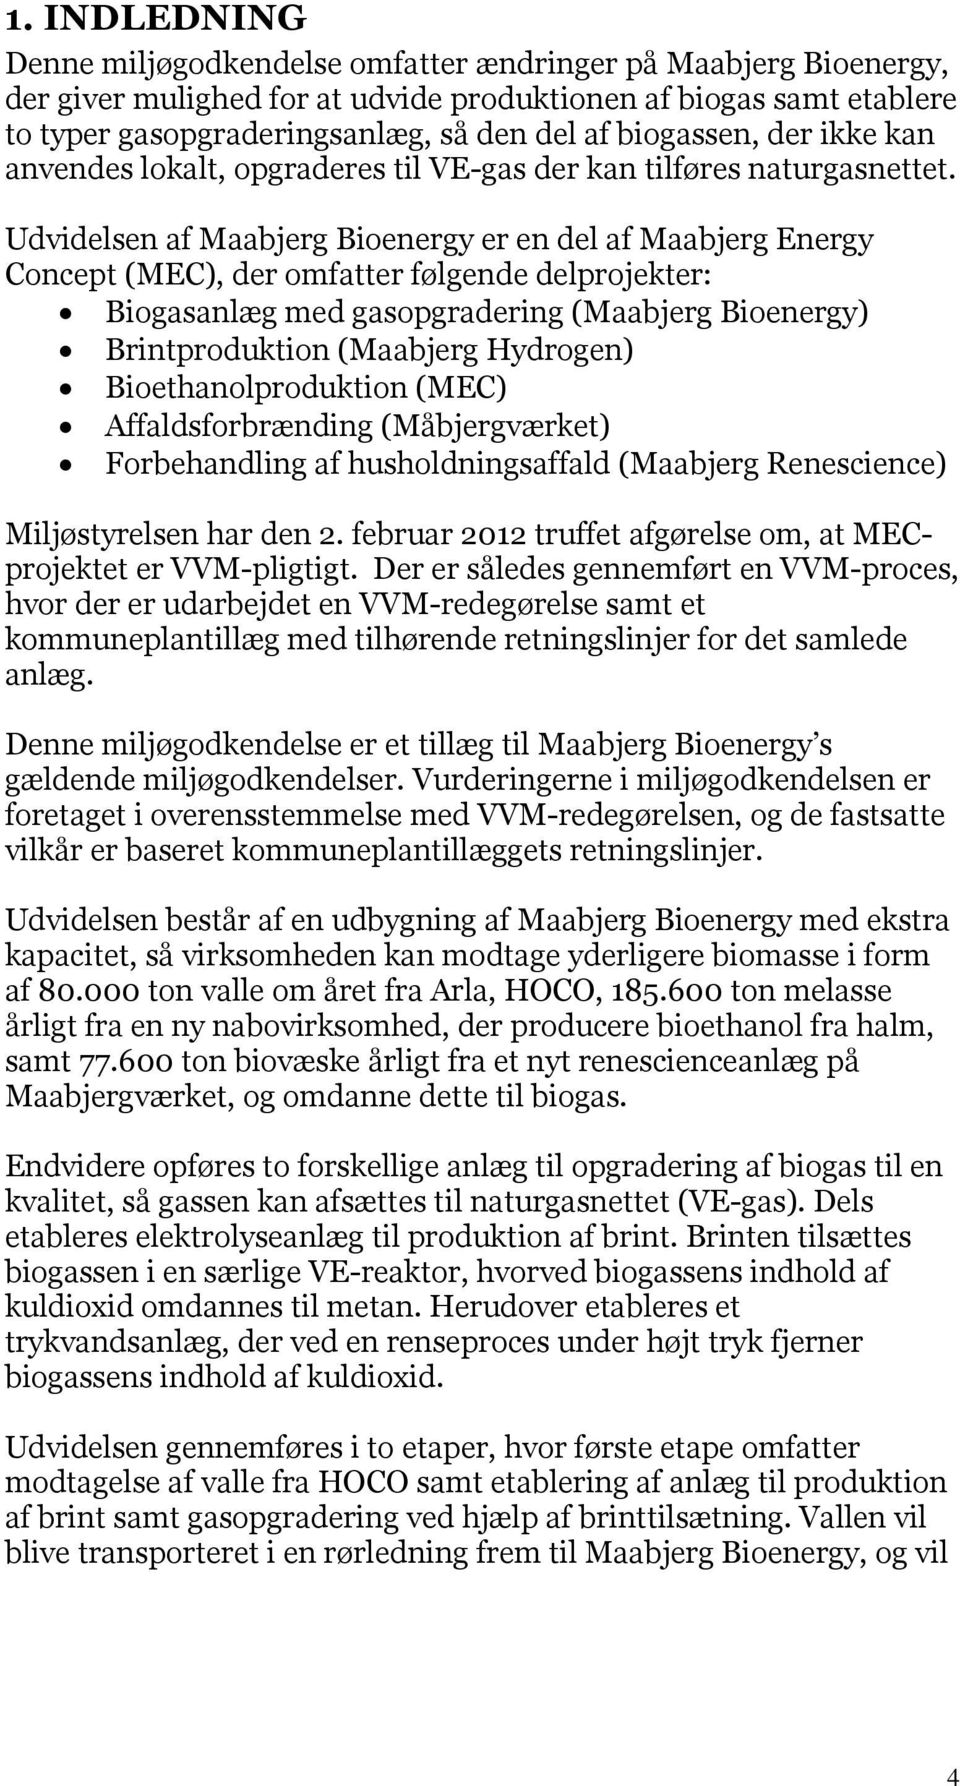 Udvidelsen af Maabjerg Bioenergy er en del af Maabjerg Energy Concept (MEC), der omfatter følgende delprojekter: Biogasanlæg med gasopgradering (Maabjerg Bioenergy) Brintproduktion (Maabjerg